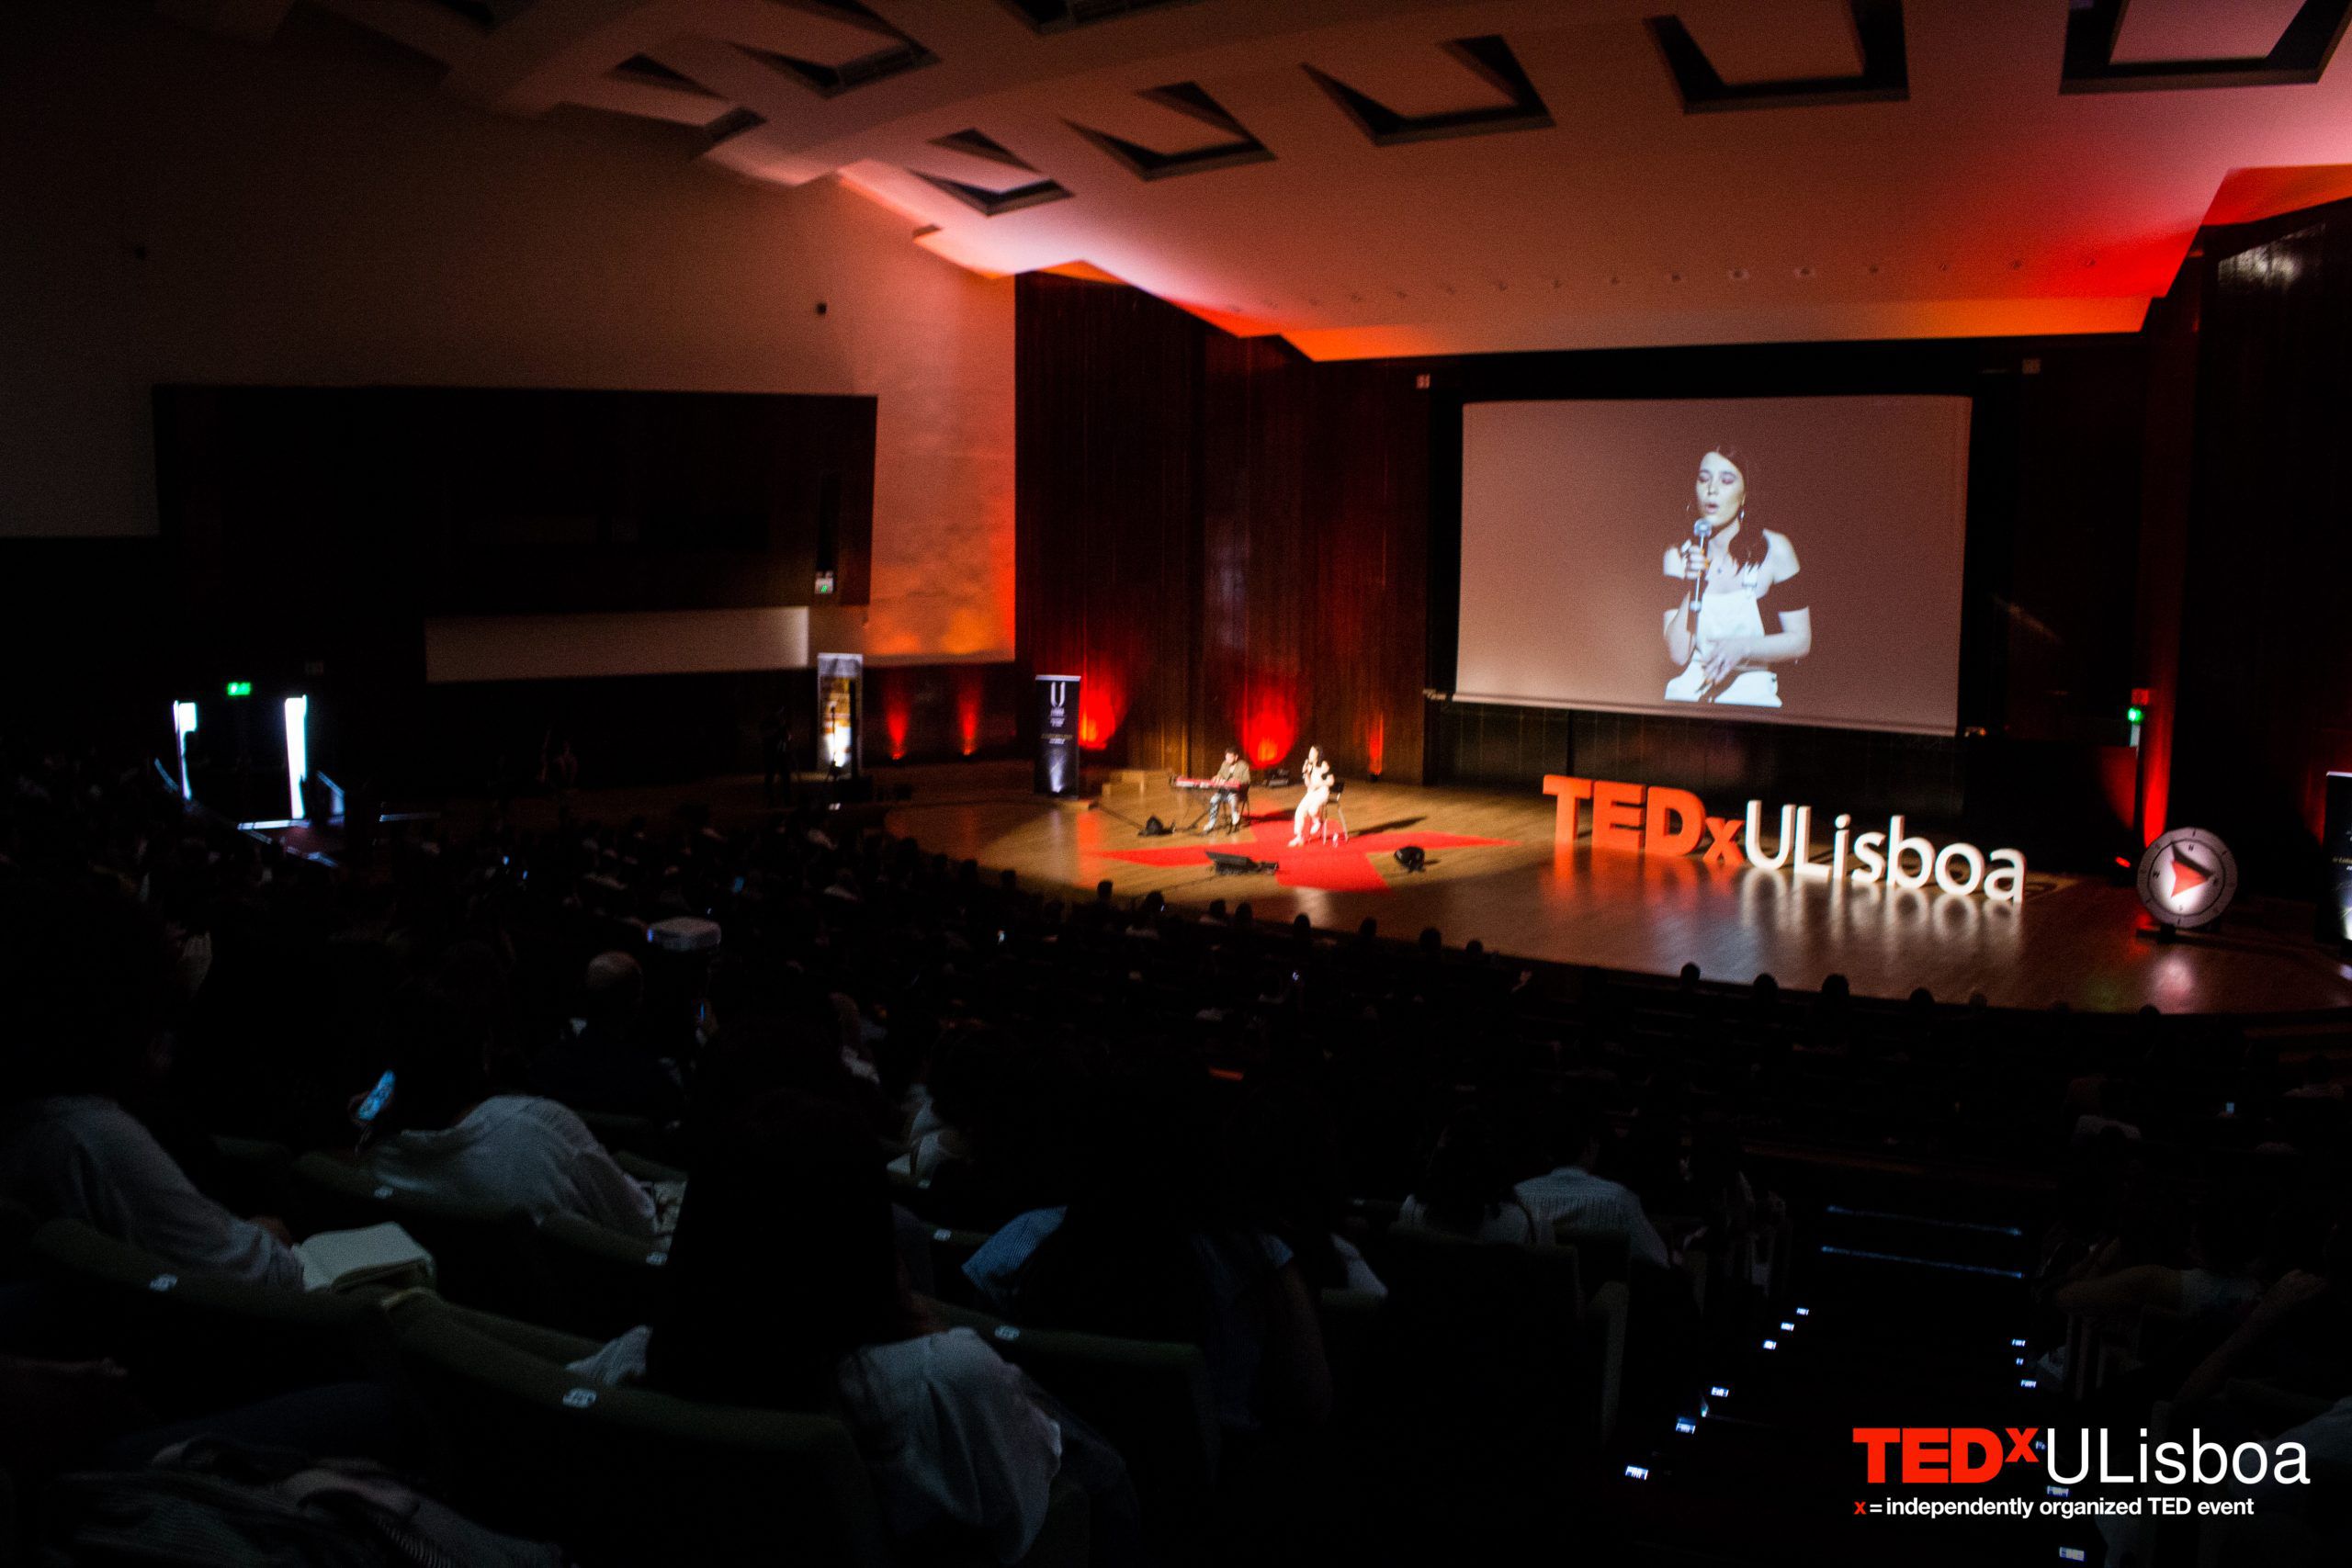 TEDxULisboa transforma-se em evento totalmente digital e gratuito